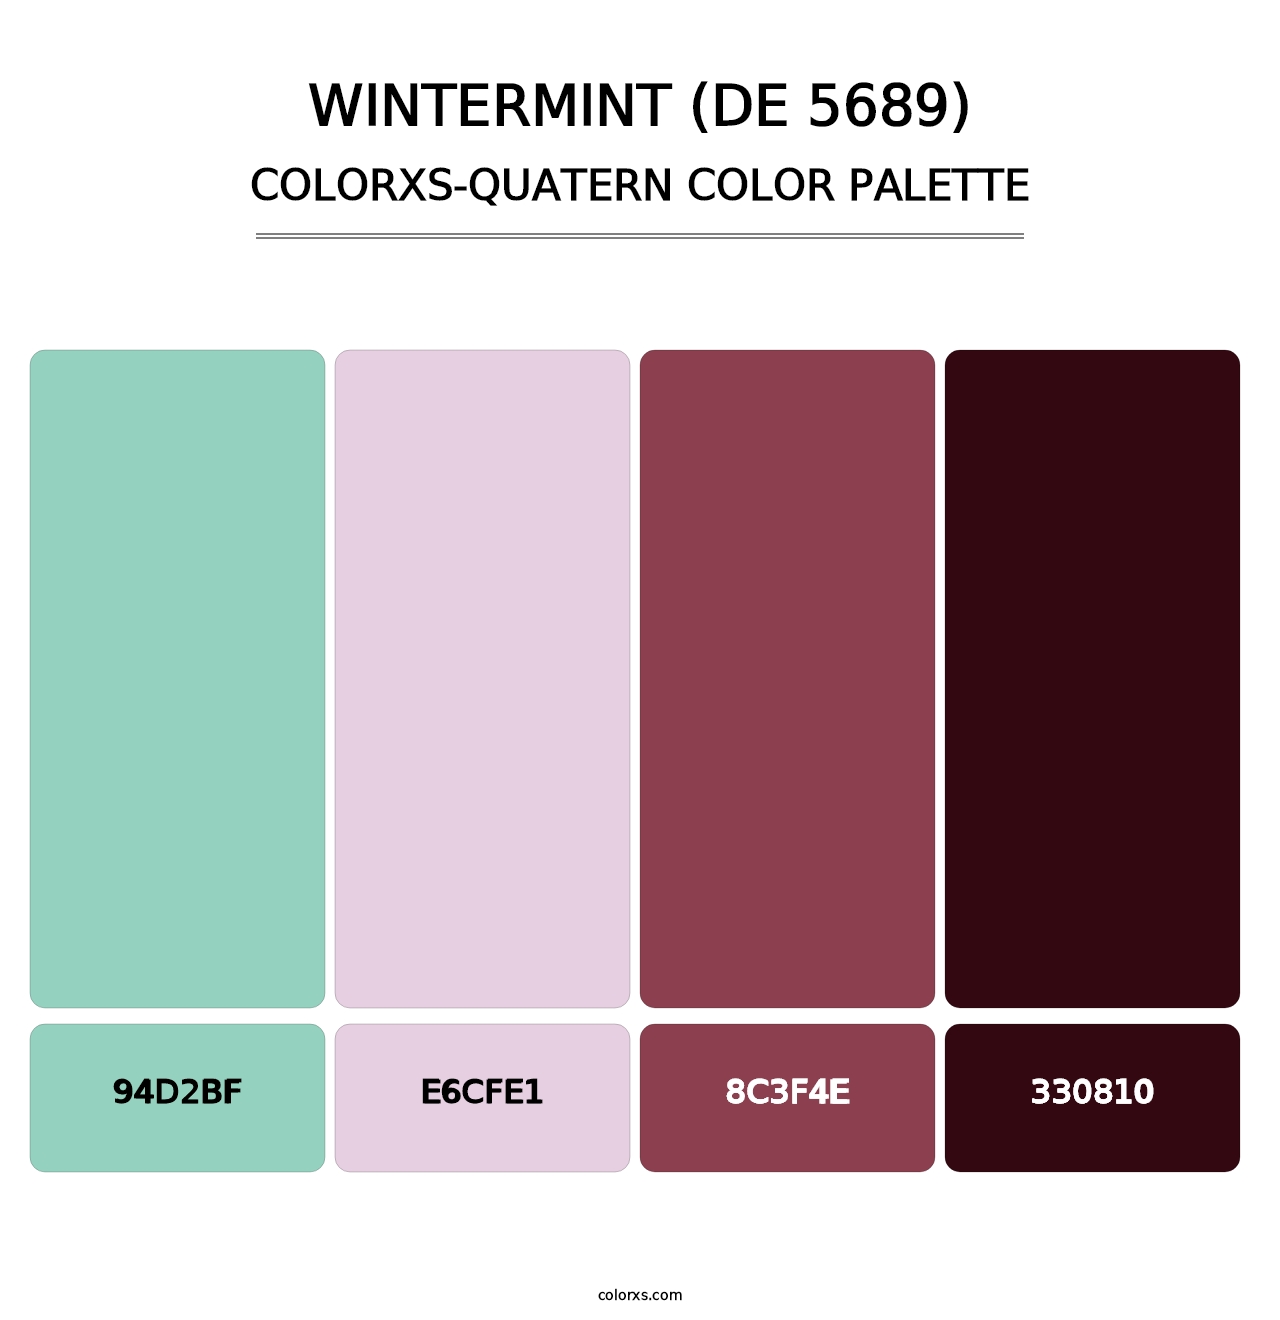 Wintermint (DE 5689) - Colorxs Quatern Palette